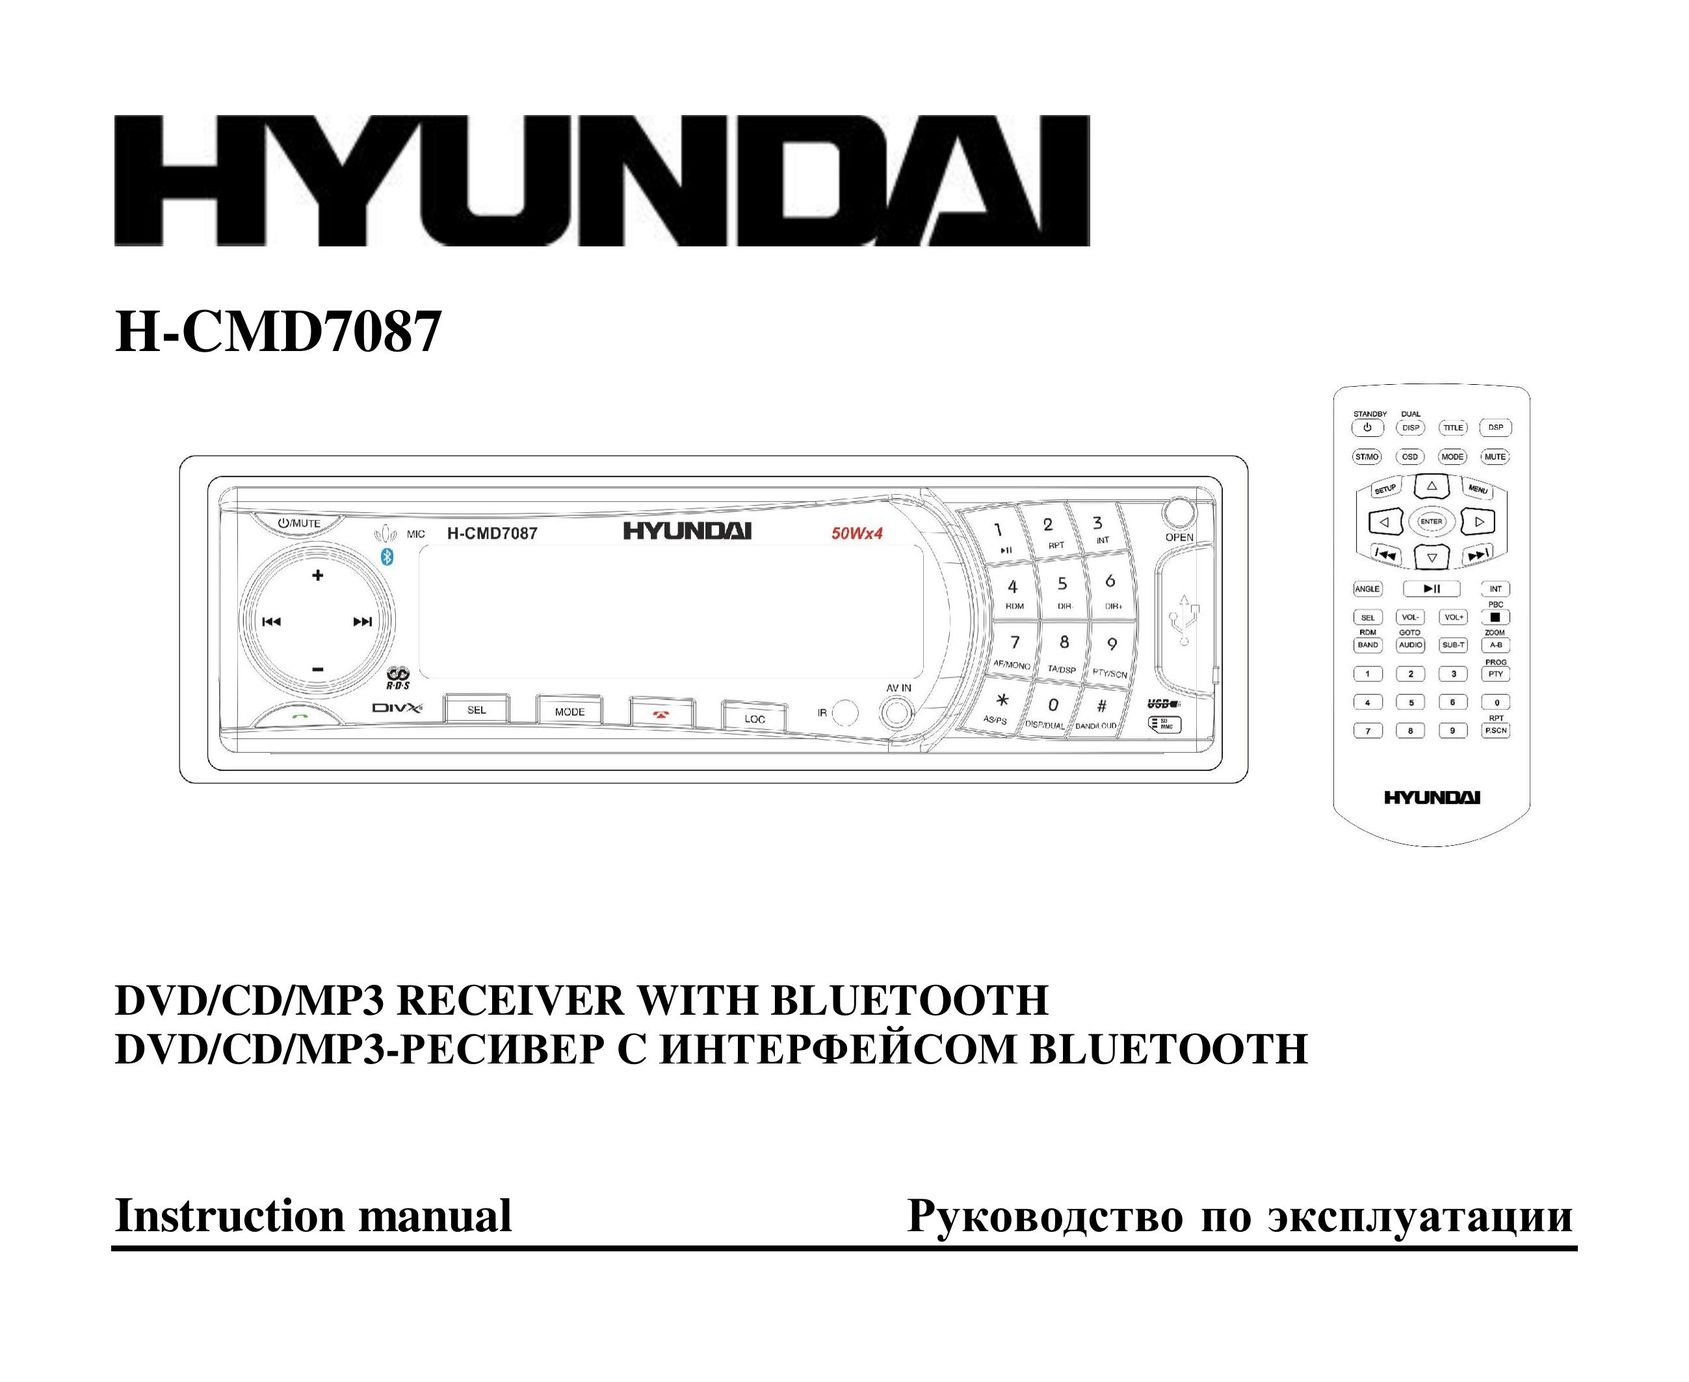 Hyundai H-CMD7087 Car Stereo System User Manual